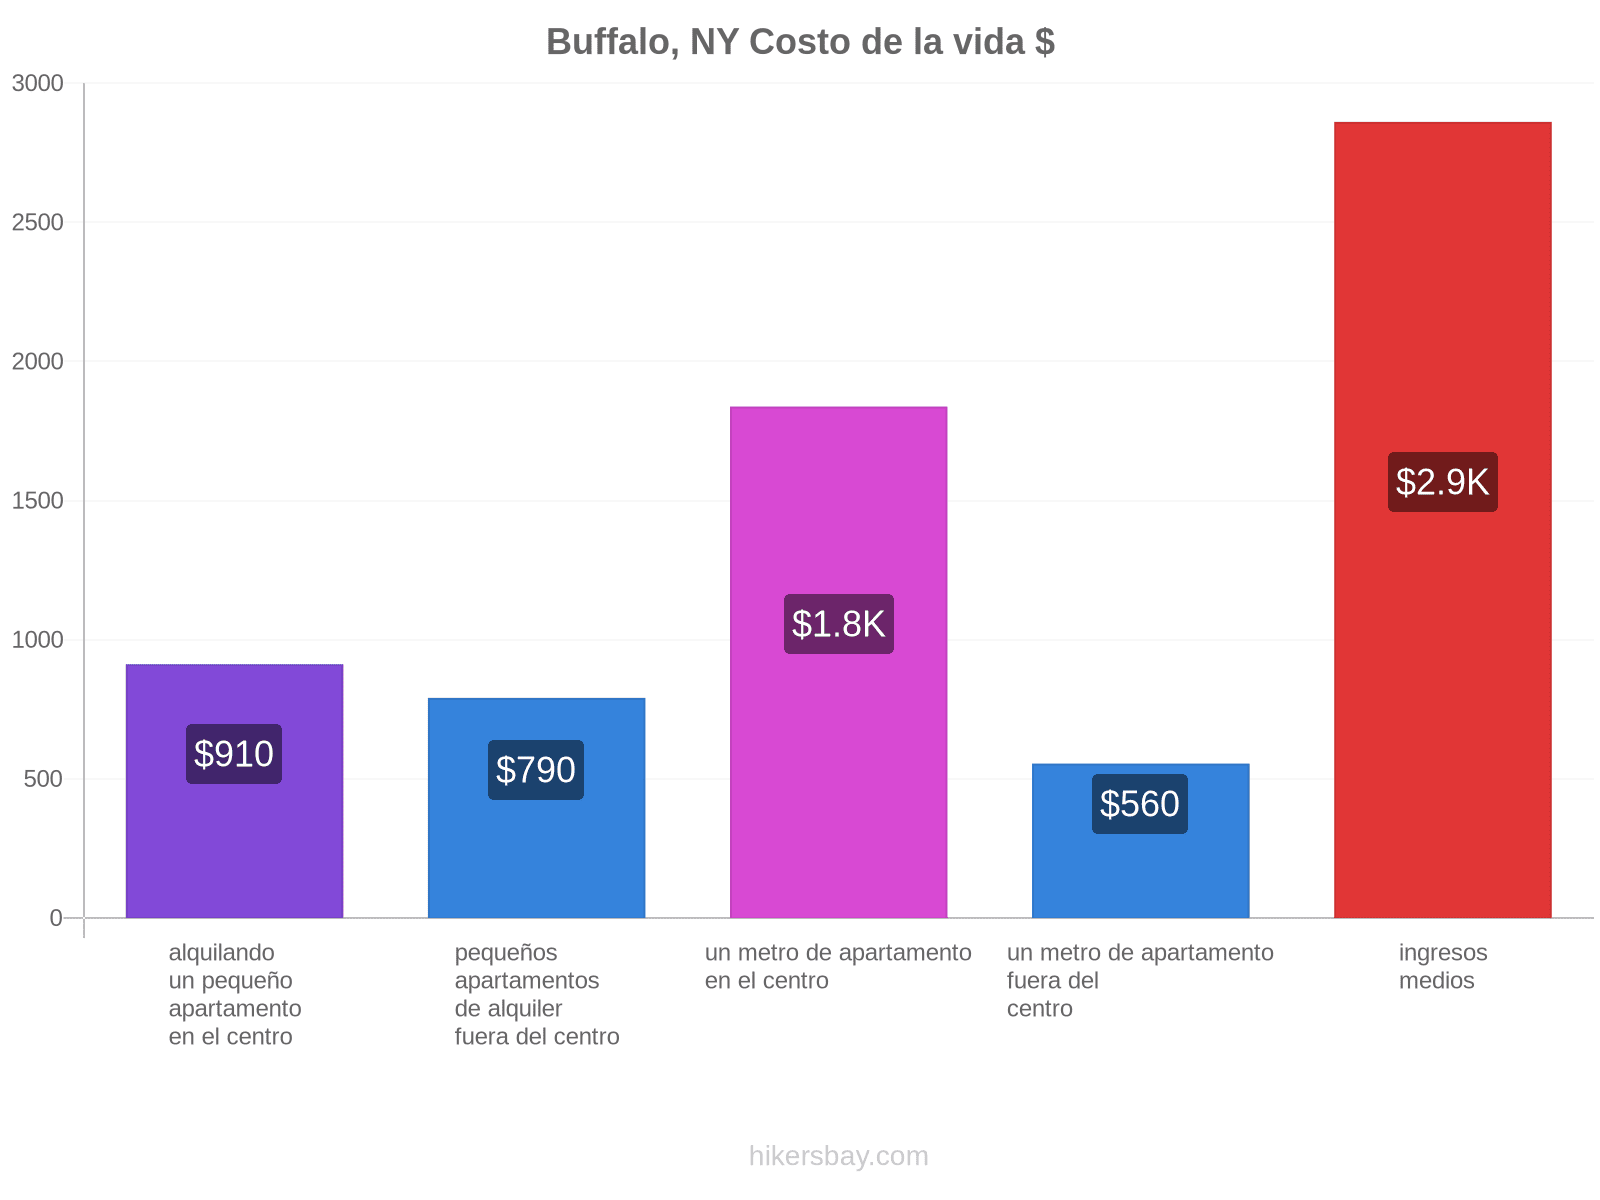 Buffalo, NY costo de la vida hikersbay.com